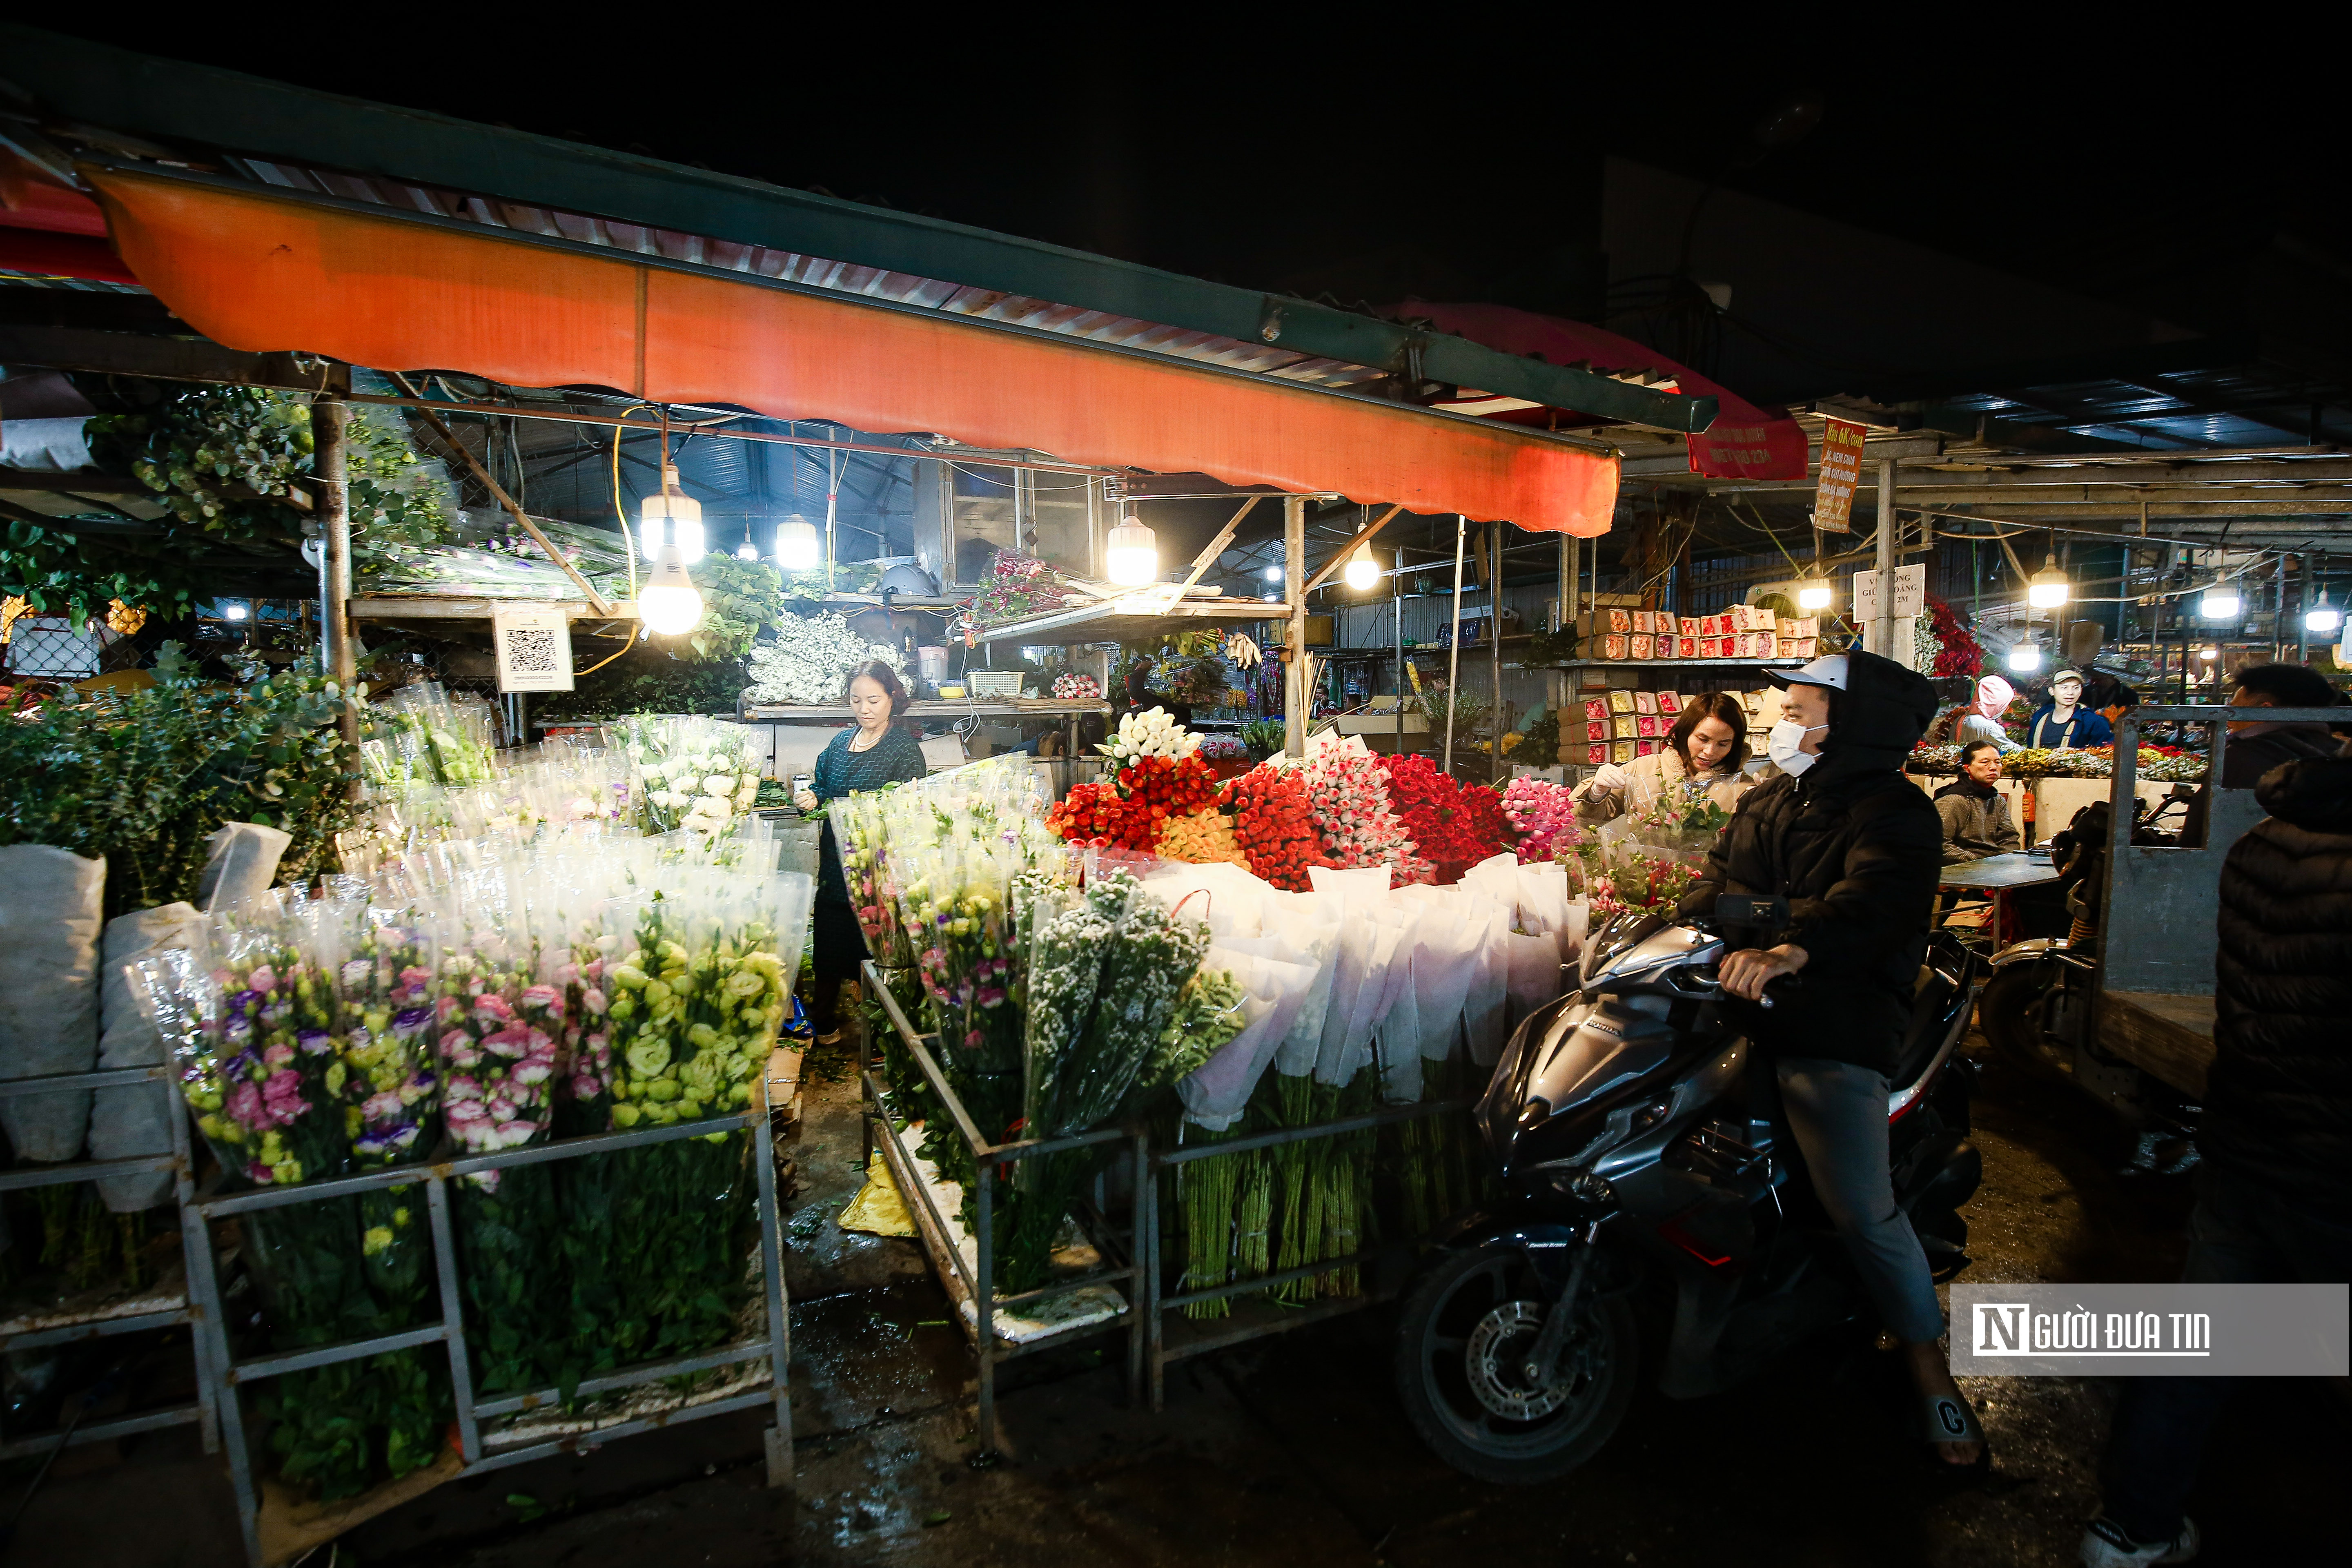 Dân sinh - Khung cảnh tấp nập tại chợ hoa Quảng An ngày cận Tết (Hình 4).